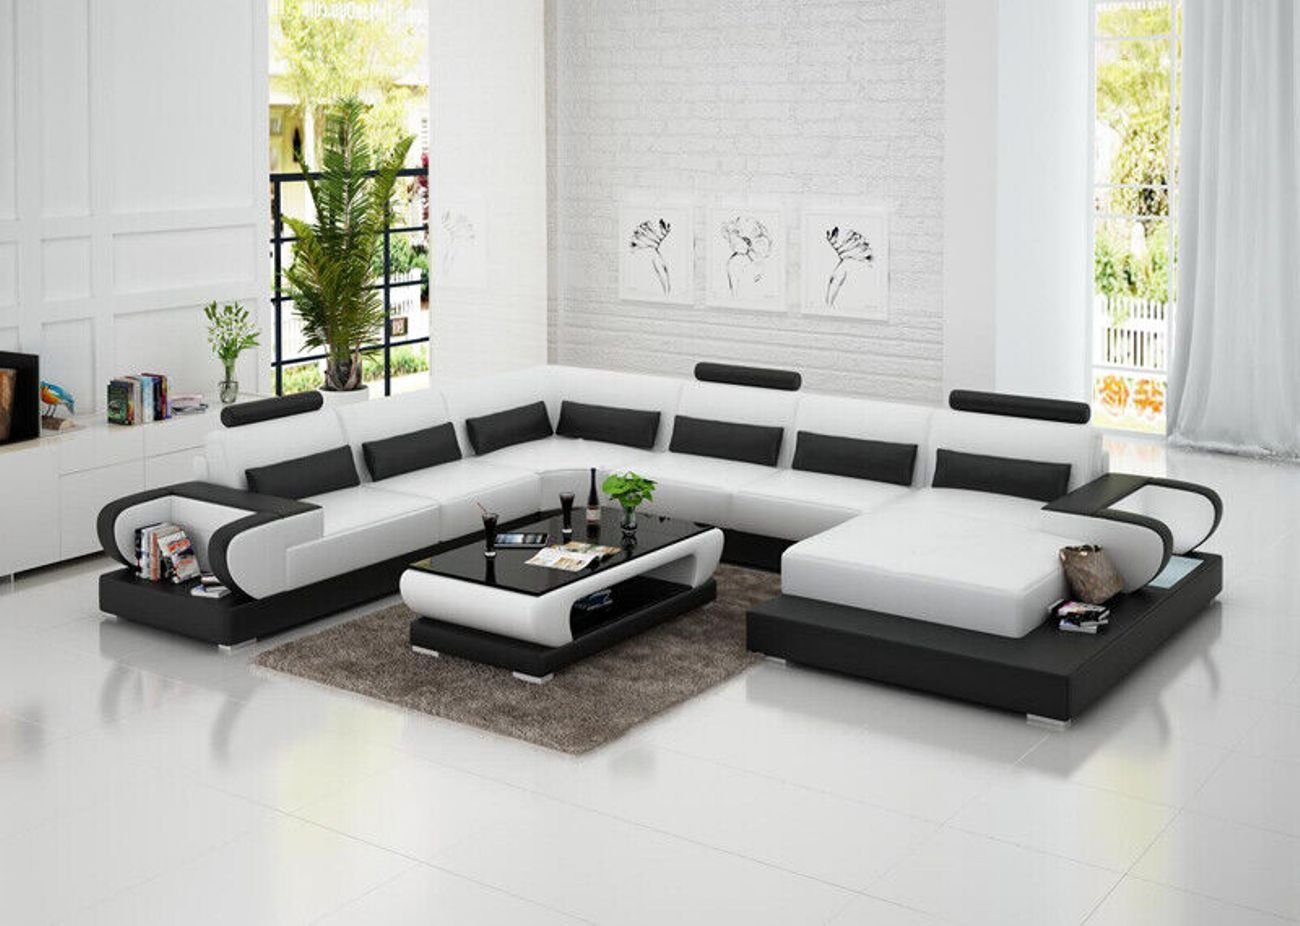 JVmoebel Ecksofa Ledersofa mit USB,Couch Wohnlandschaft Ecksofa Garnitur Modern Sofa Weiß